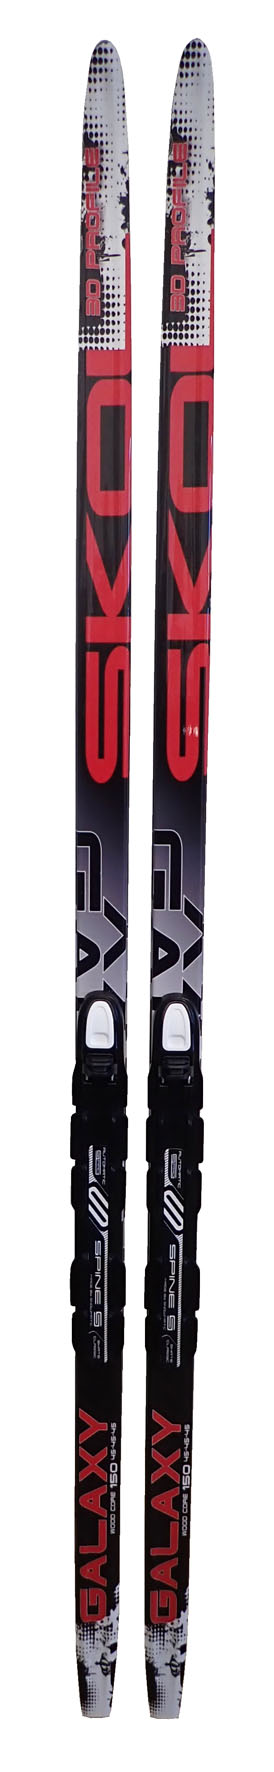 LSR-180 Běžecké lyže s vázáním NNN